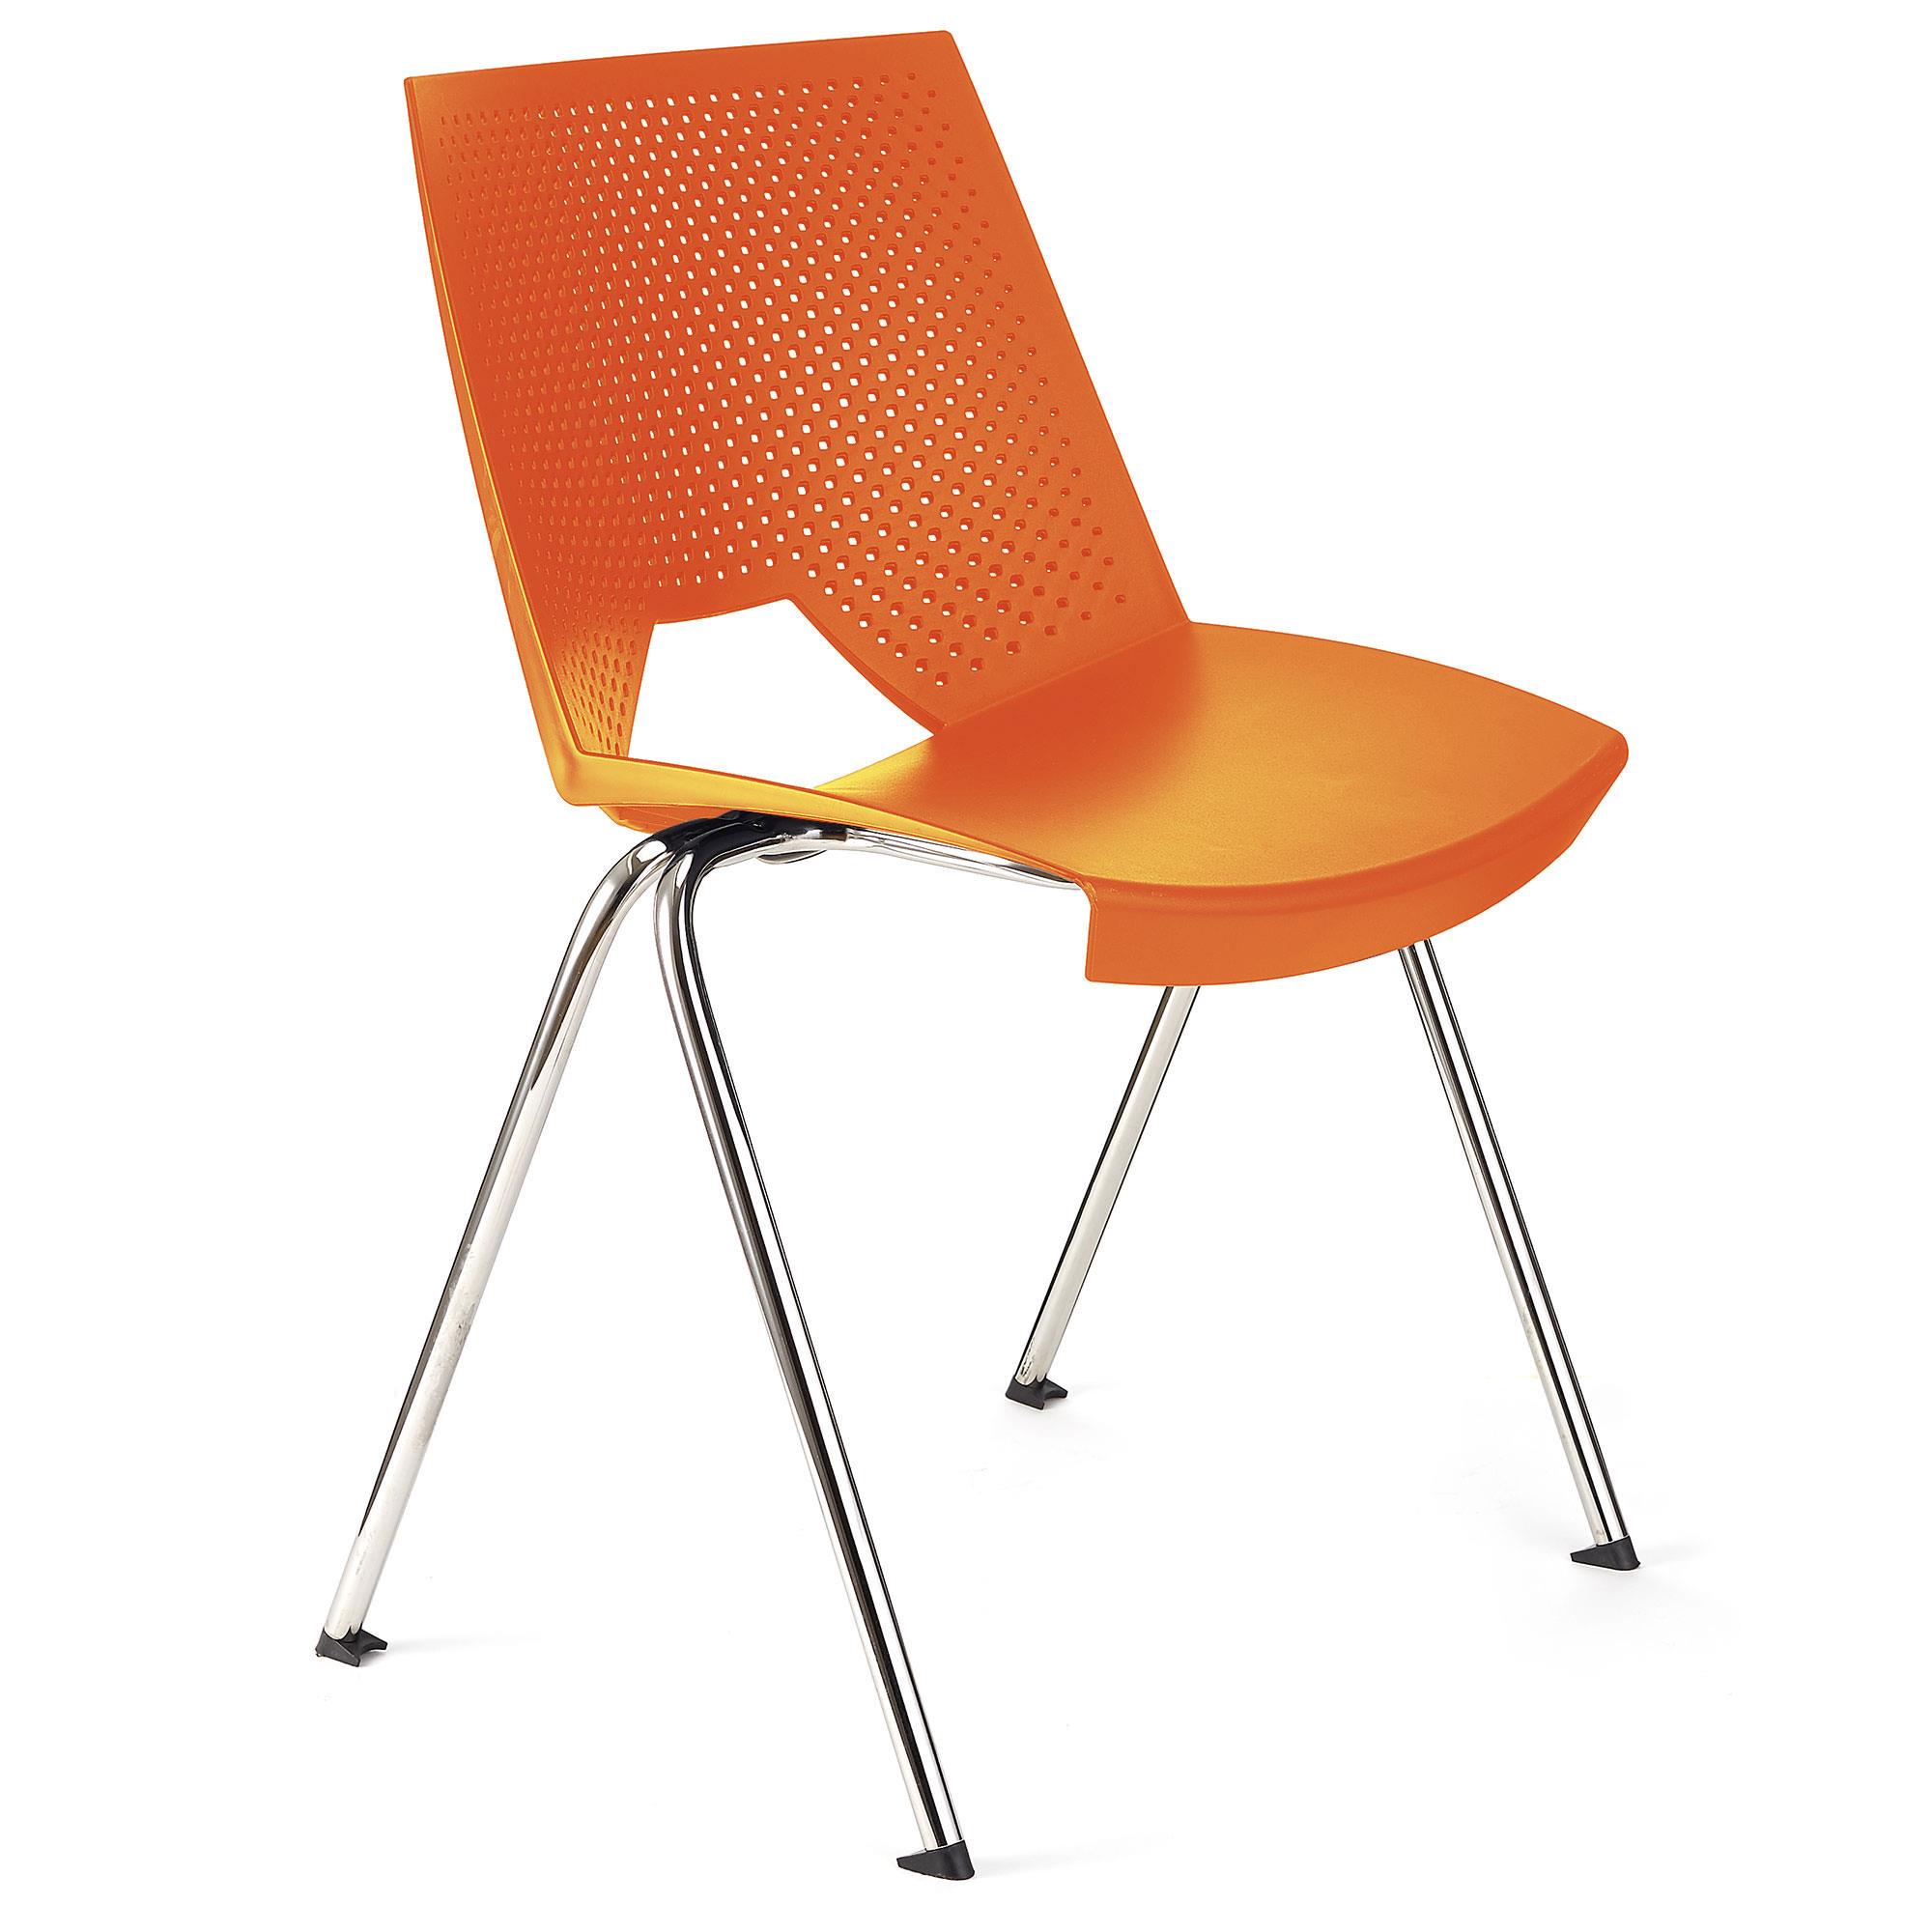 Konferenzstuhl ENZO, bequem, praktisch und stapelbar, Farbe Orange